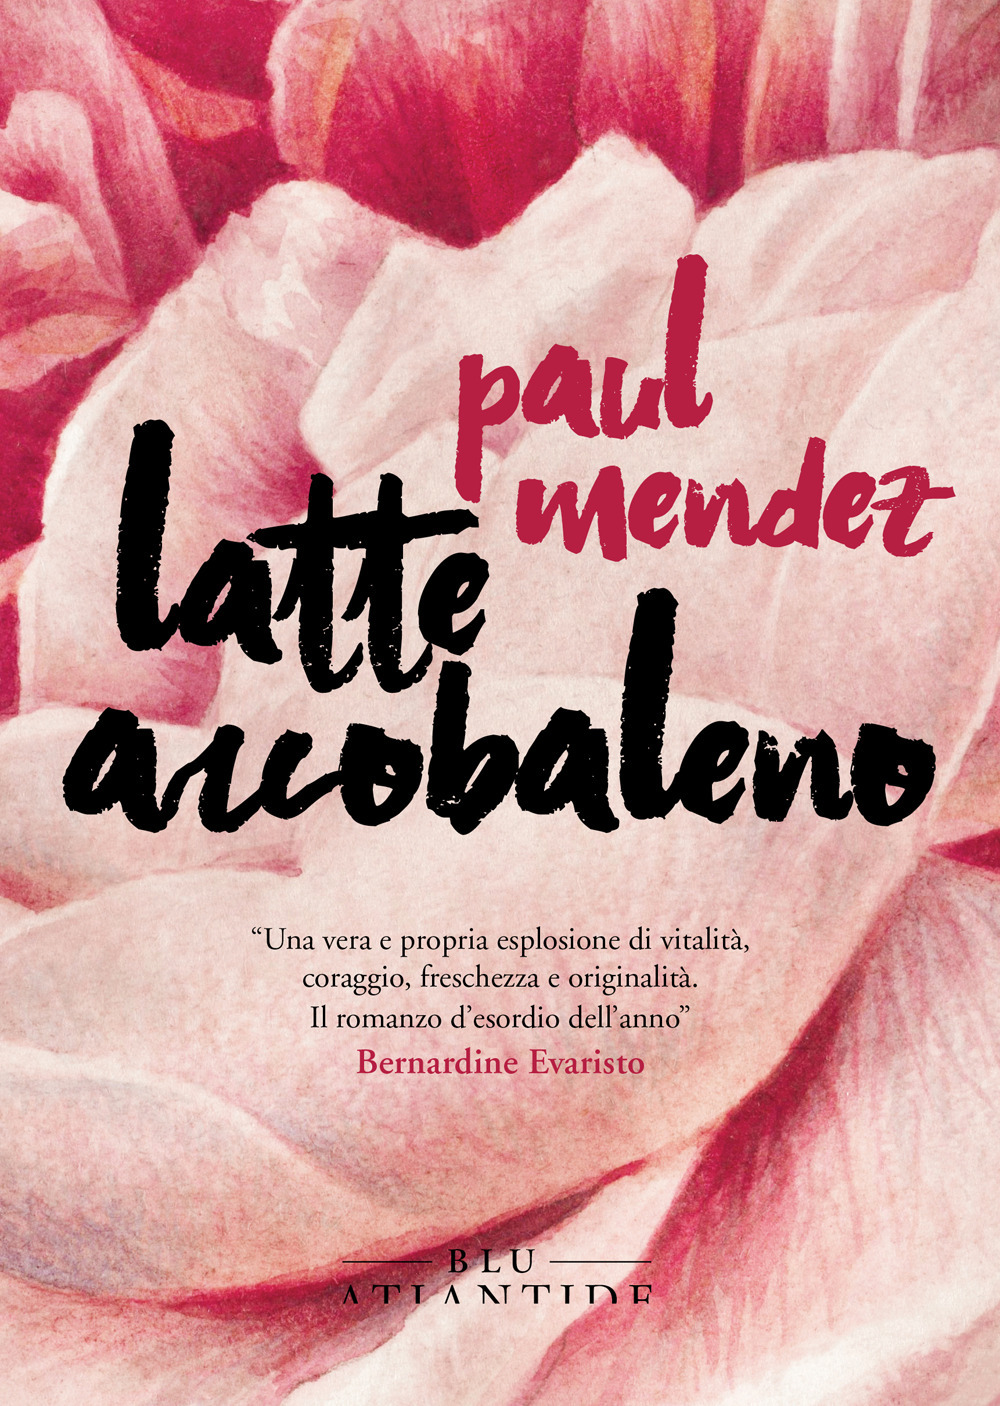 Libri Mendez Paul - Latte Arcobaleno NUOVO SIGILLATO, EDIZIONE DEL 17/02/2021 SUBITO DISPONIBILE